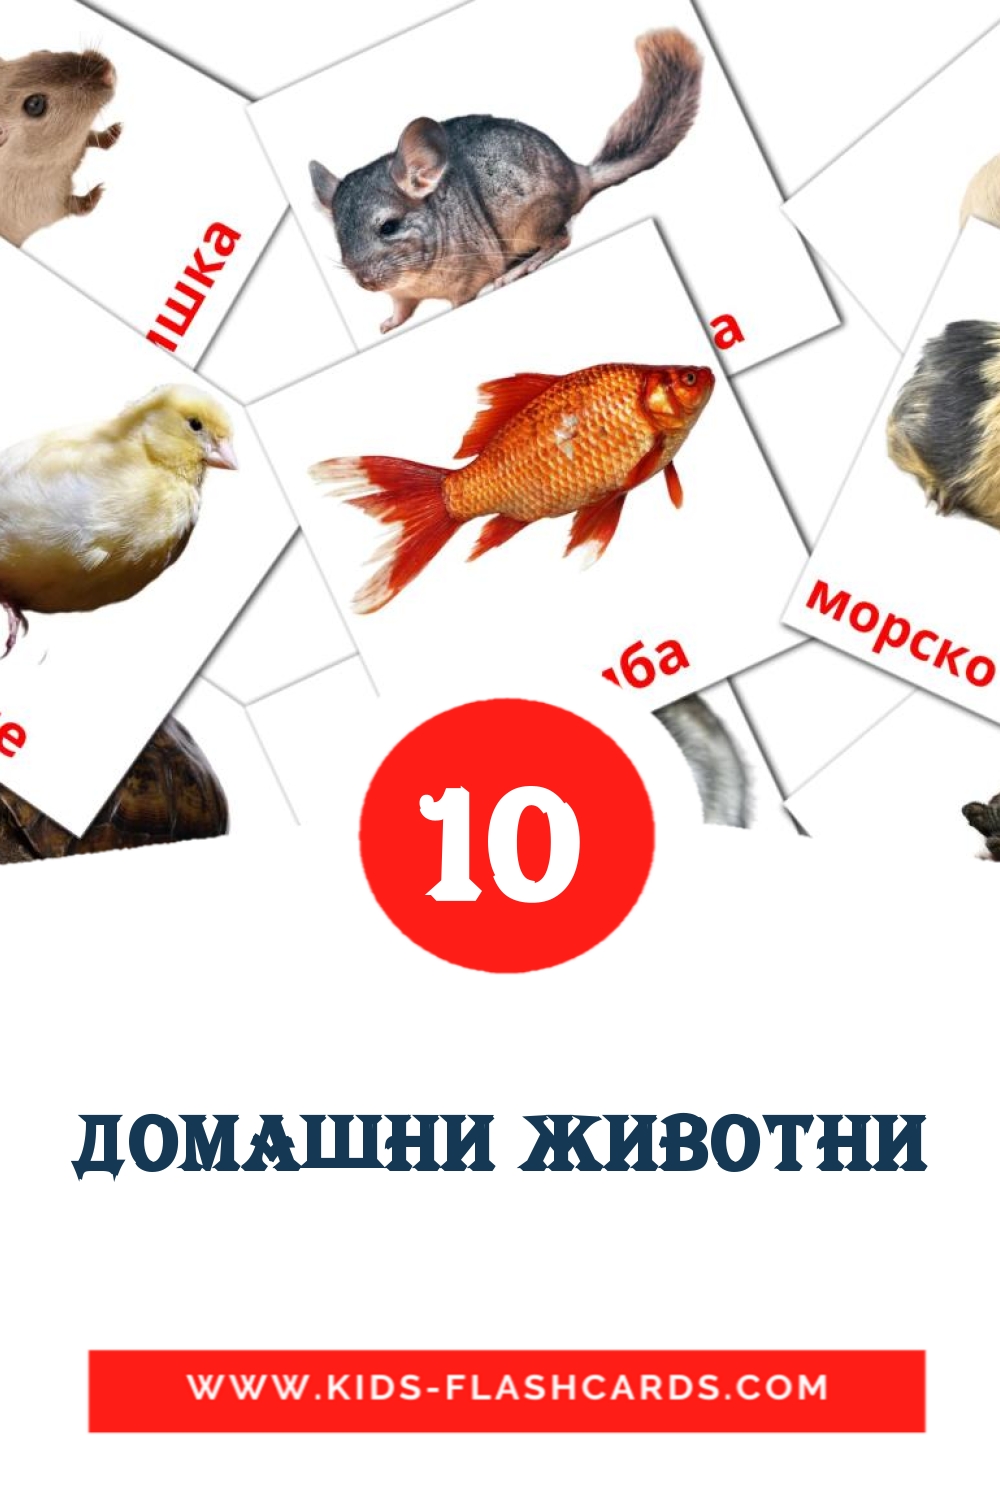 10 tarjetas didacticas de Домашни животни para el jardín de infancia en brashkir